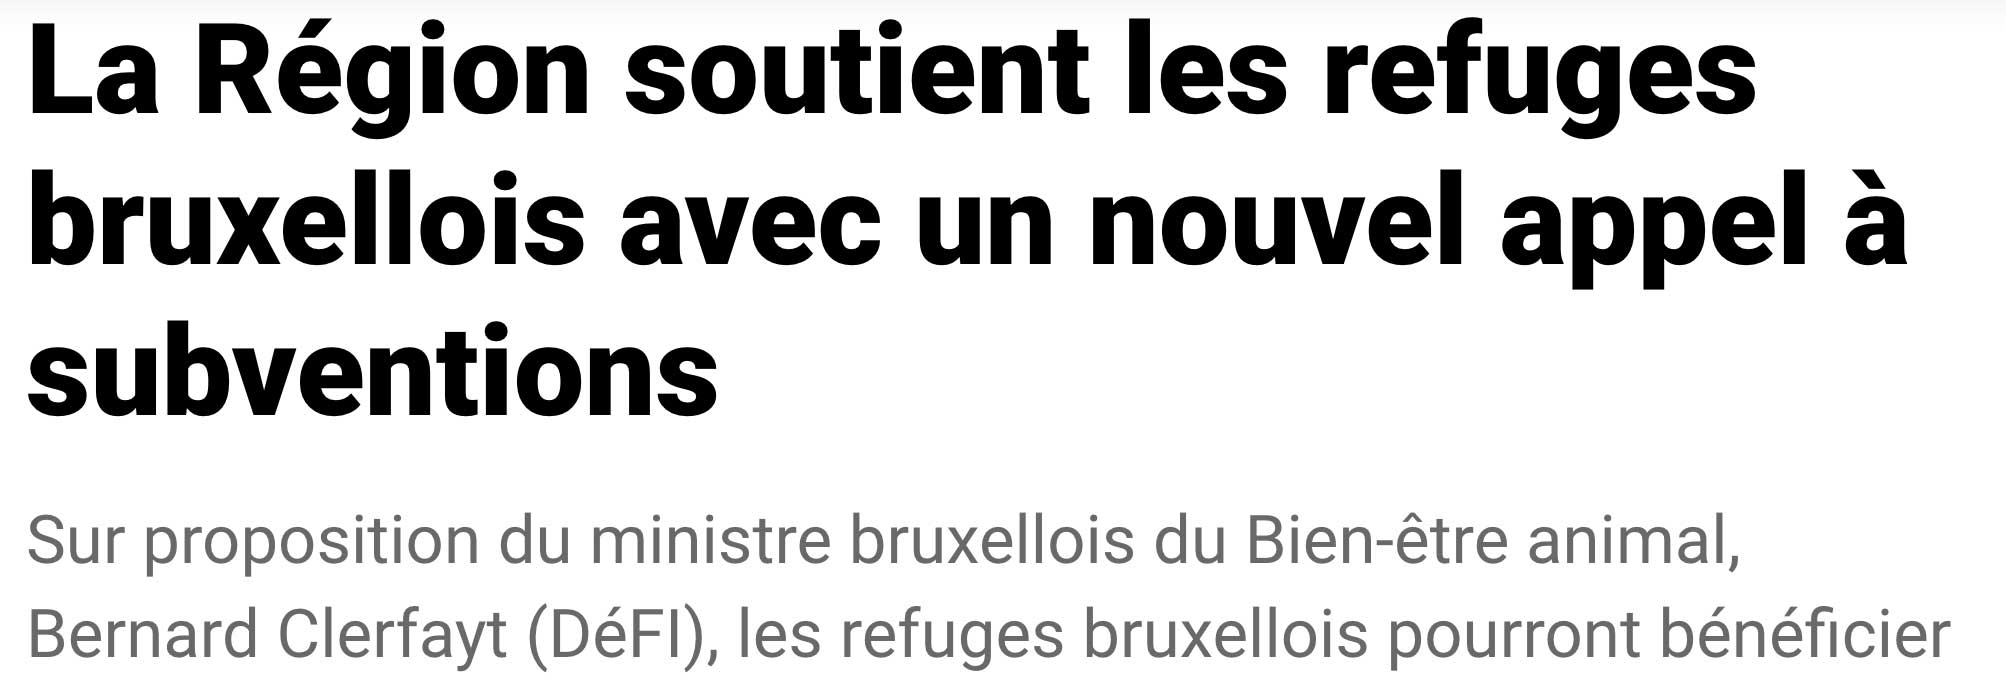 Extrait de presse, La Capitale : "La Région soutient les refuges bruxellois avec un nouvel appel à subventions"